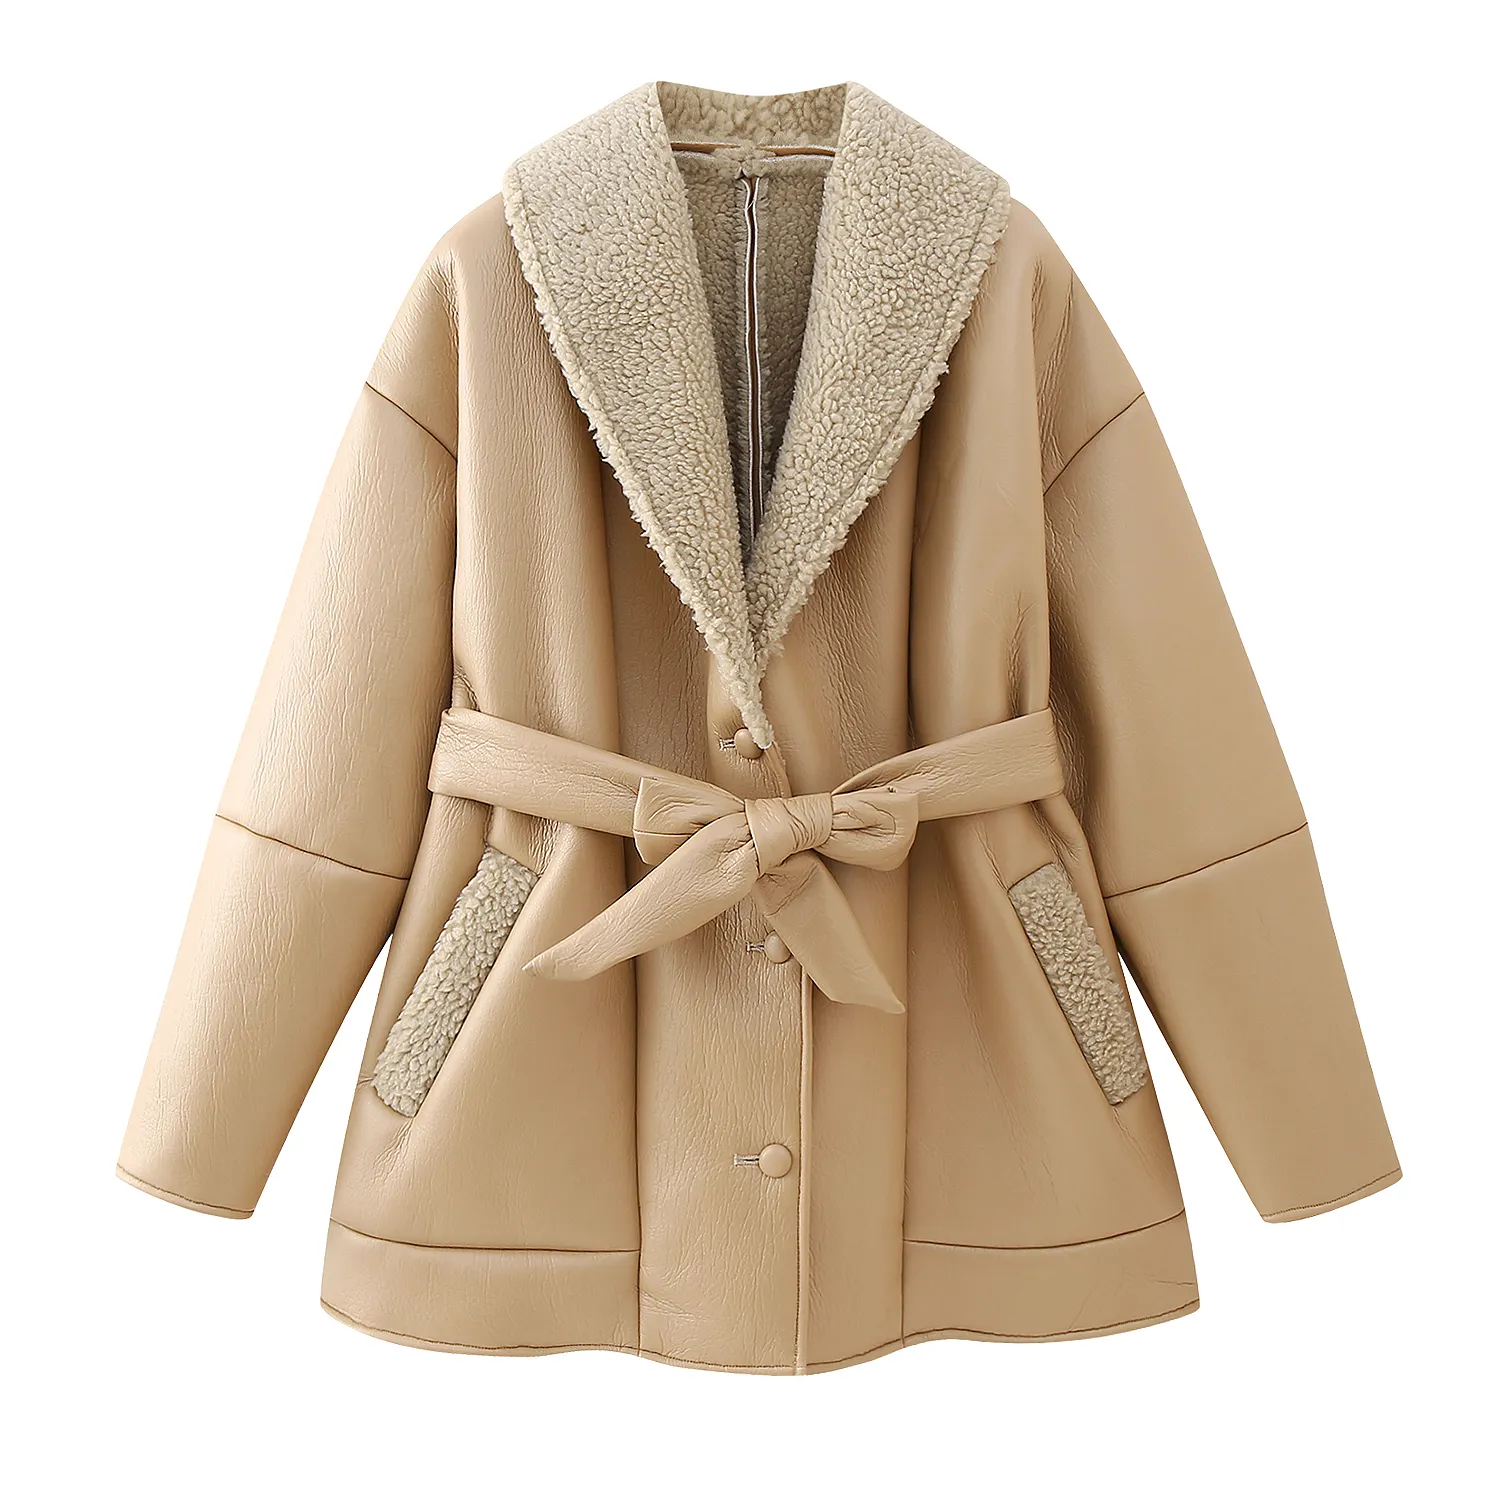 Jaket kasual musim dingin wanita, jaket bahu jatuh lengan panjang warna krem desain kebesaran dengan sabuk